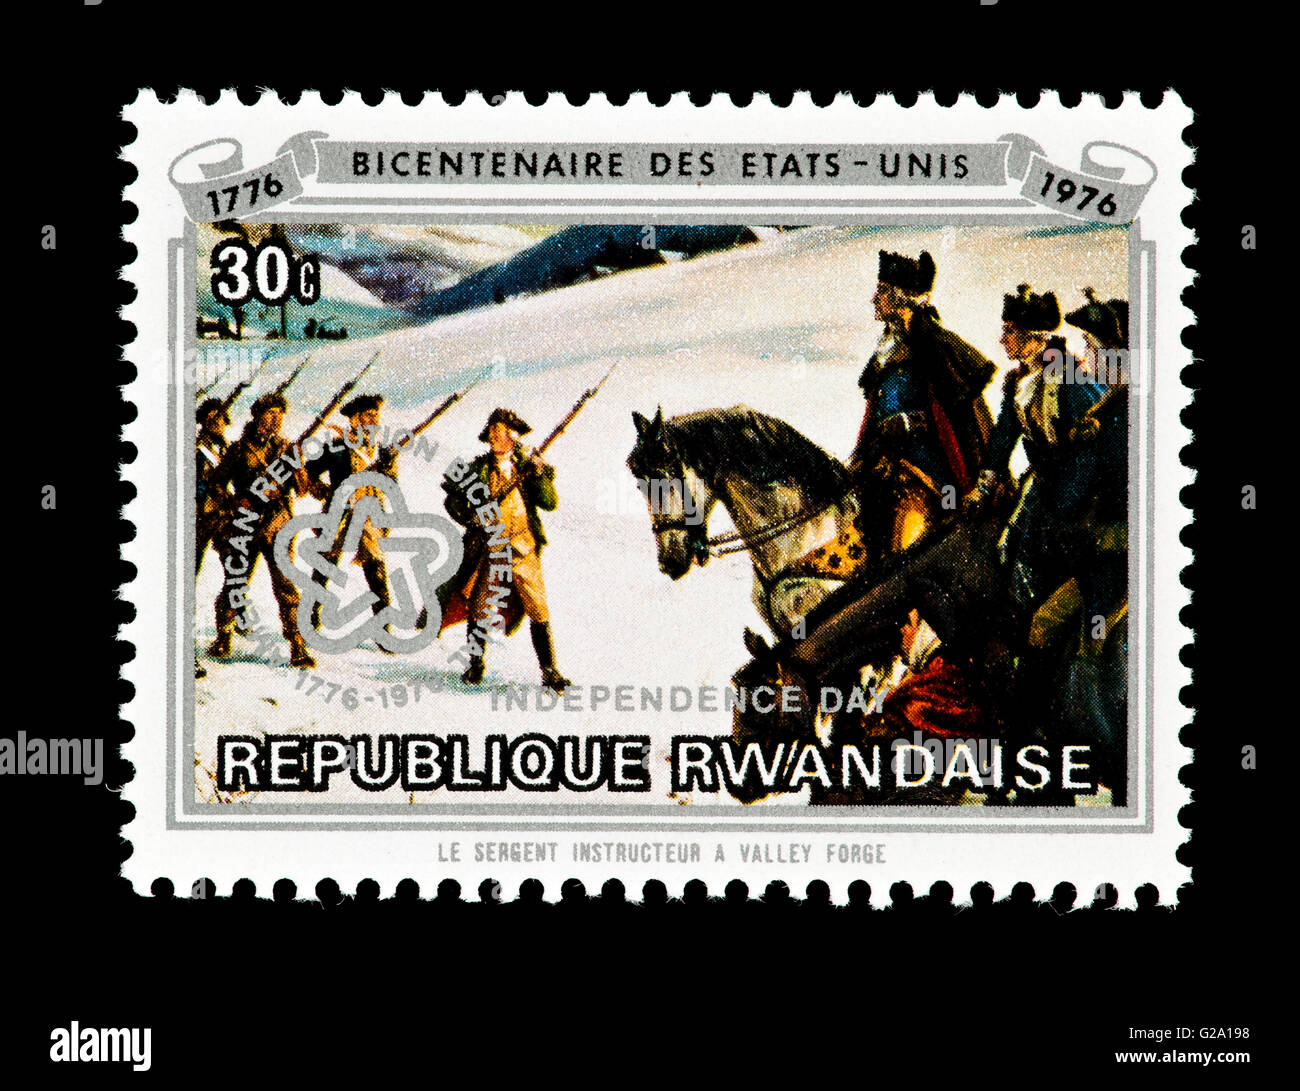 Briefmarke aus Ruanda Darstellung Soldaten ausgebildet in Valley Forge, Zweihundertjahrfeier der Vereinigten Staaten. Stockfoto